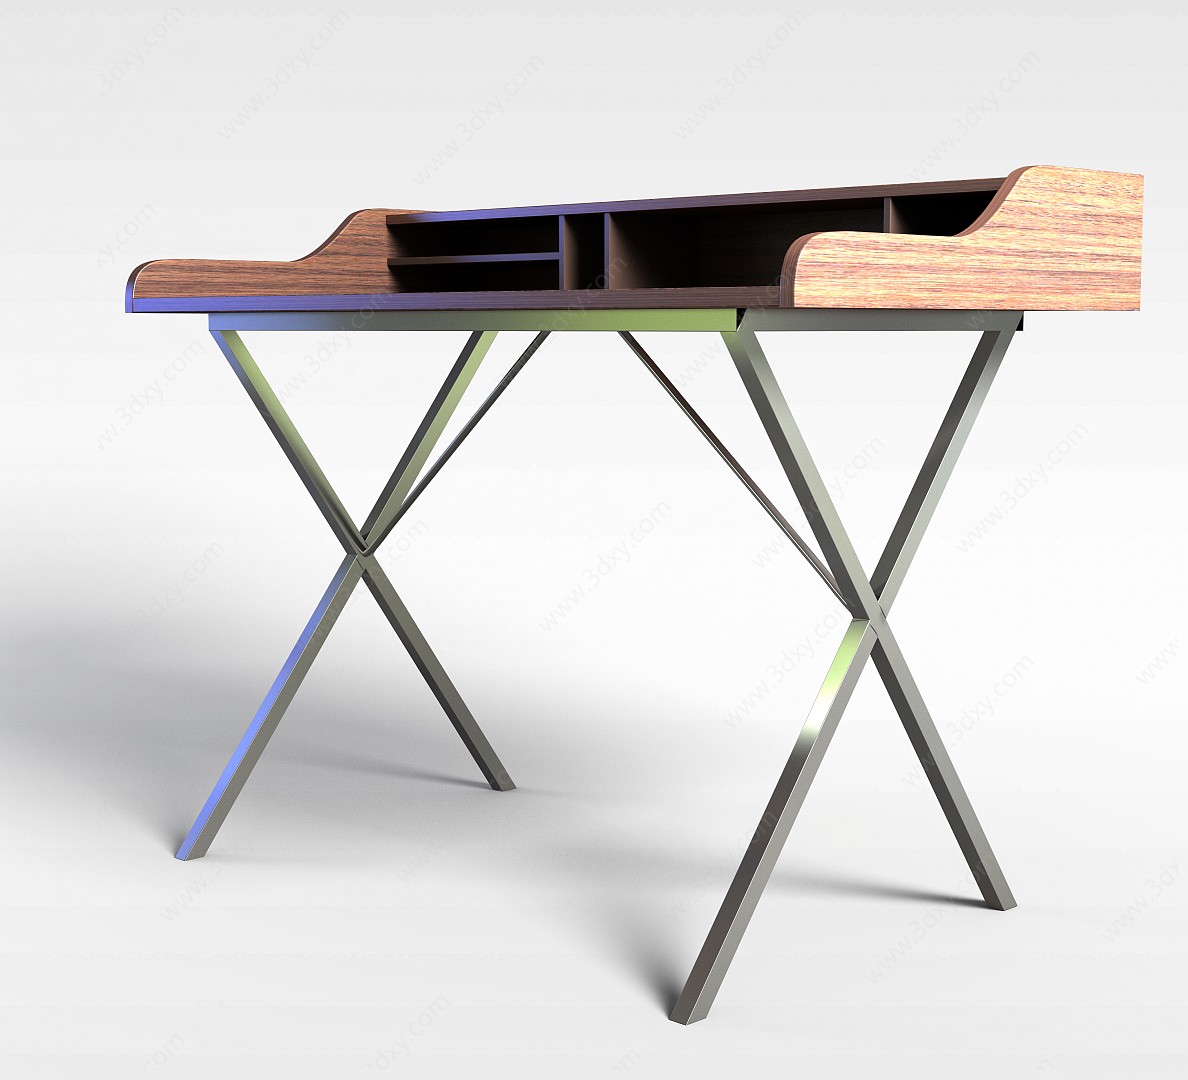 简易木桌3D模型